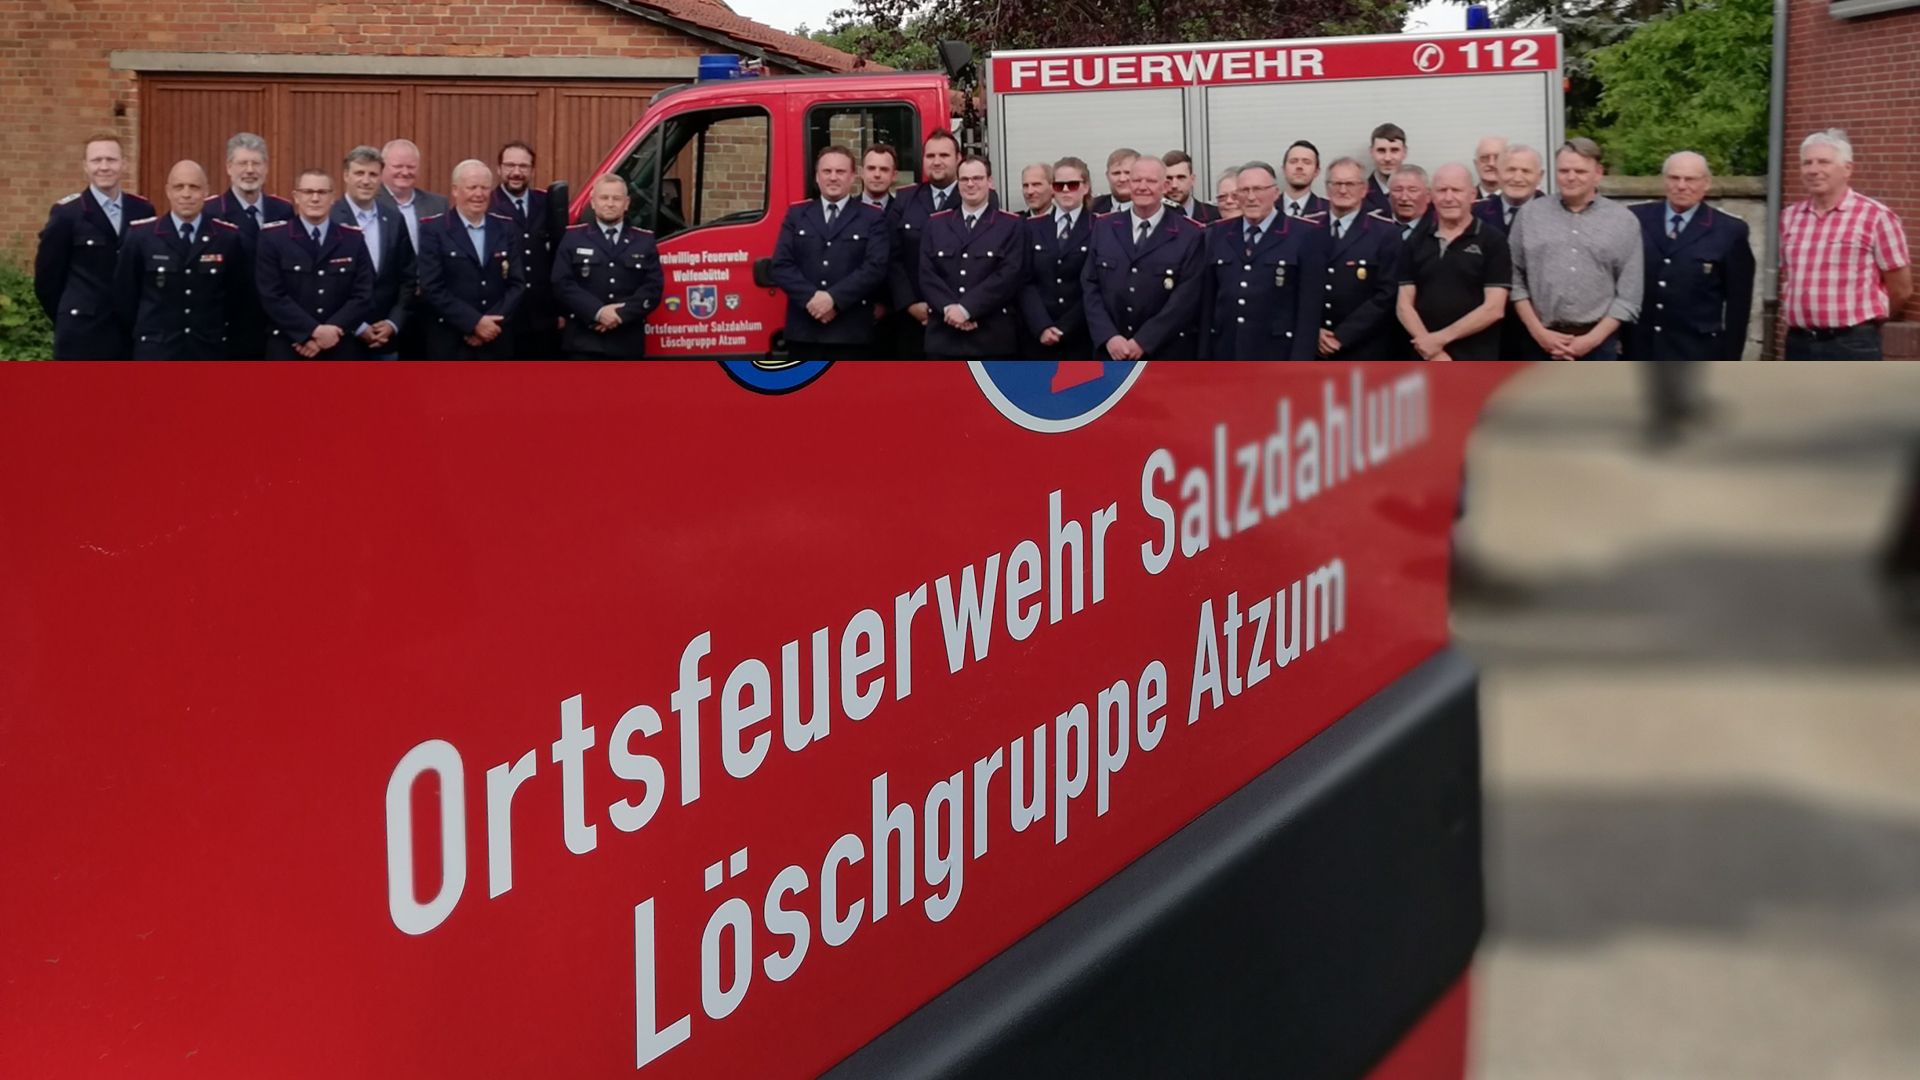 Fotocollage. Das obere Foto zeigt ein Gruppenfoto der Freiwilligen Feuerwehr Salzdahlum. Das untere Foto zeigt den Aufdruck einer Tür eines Einsatzfahrzeuges mit der Aufschrift  "Ortsfeuerwehr Salzdahlum. Löschgruppe Atzum."